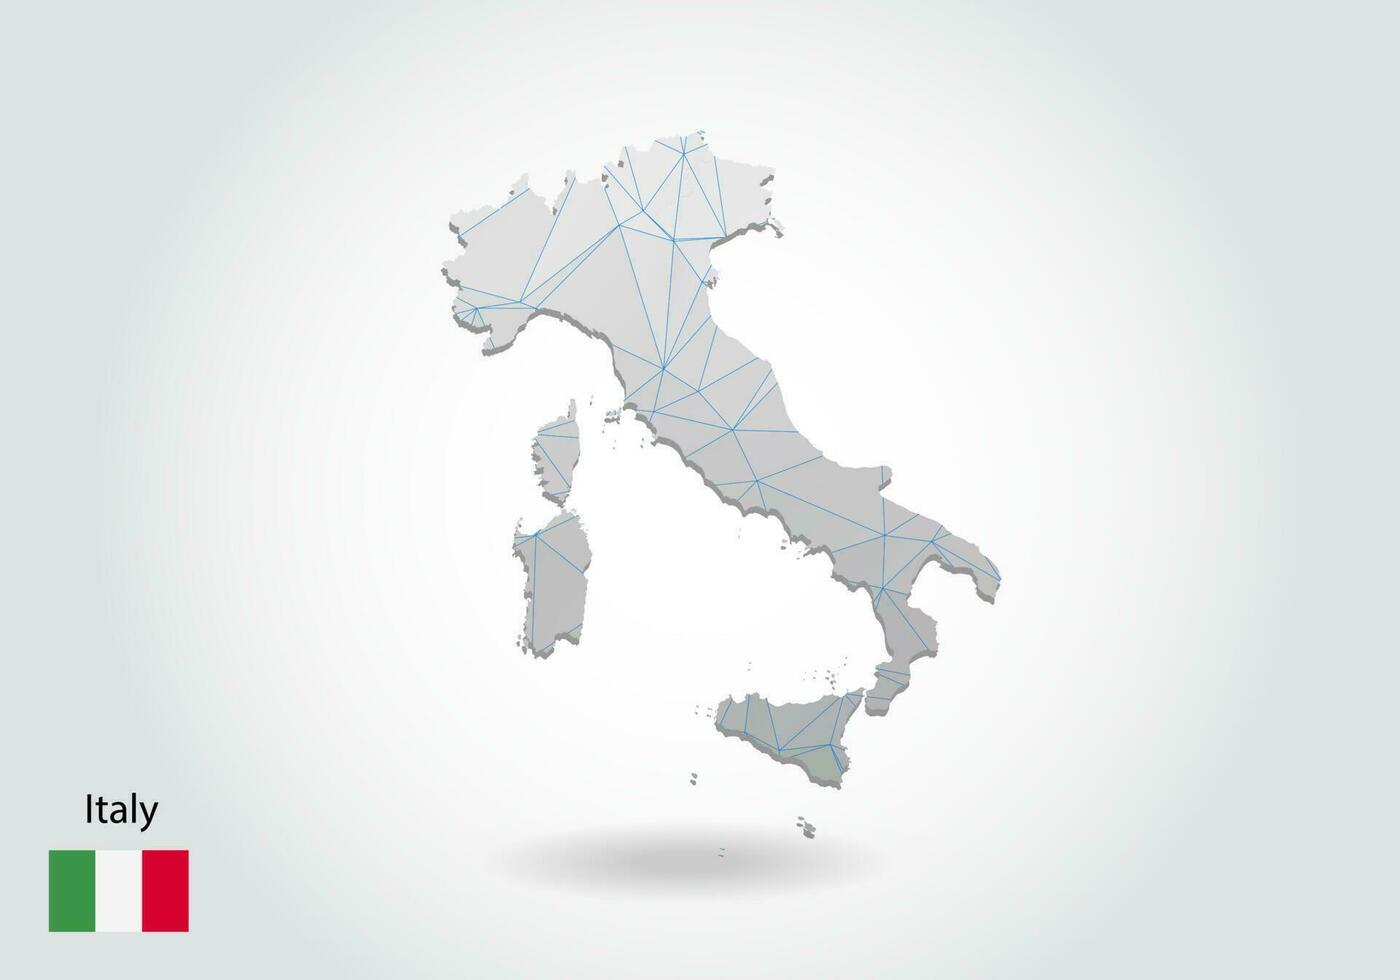 vektor karta över Italien med trendiga trianglar design i polygonal stil på mörk bakgrund, kartform i modern 3d papper cut art stil. skiktad pappersutskärningsdesign.